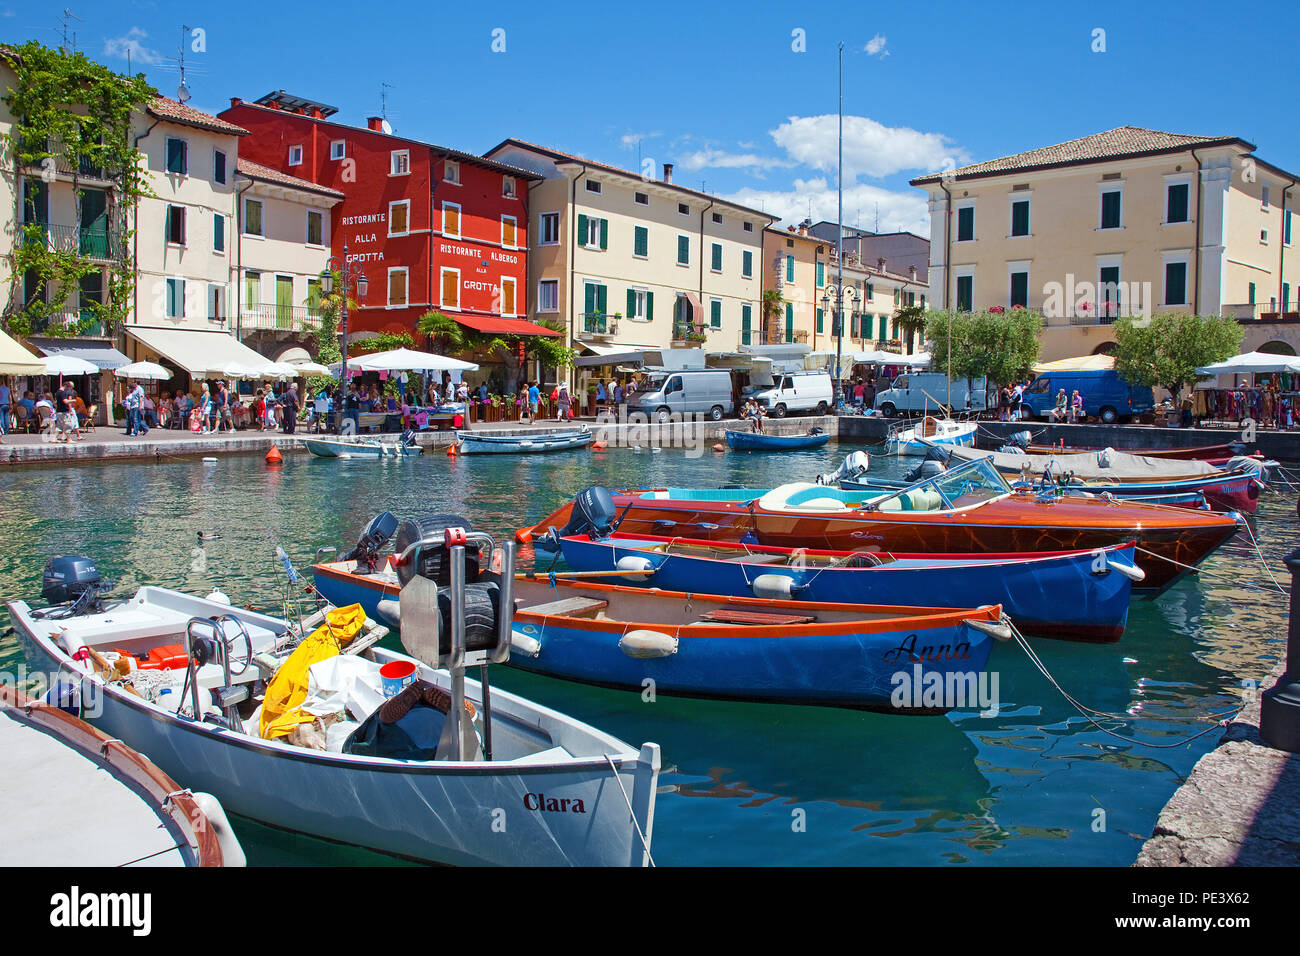 Boote im Hafen von Lazise, gardasee, Provinz Verona, Italien | Barche presso il porto di Lazise, sul lago di Garda, provincia di Verona, Italia Foto Stock